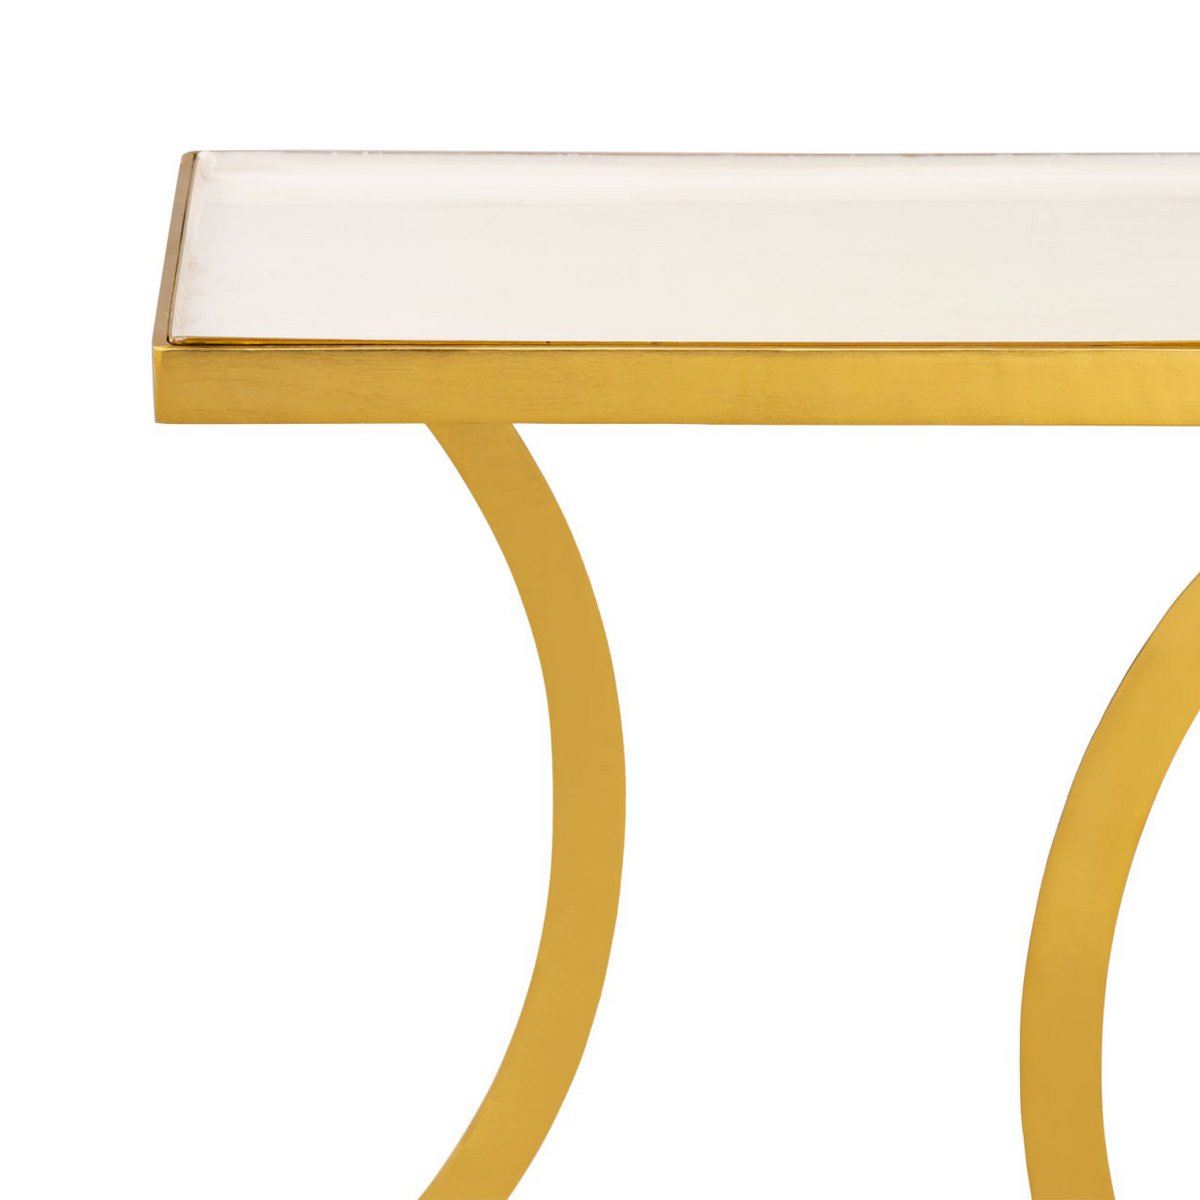 Bijzettafel decoratieve tafel vierkant 40 H 45 cm lampentafel salontafel Eden tafel metaal goud en email